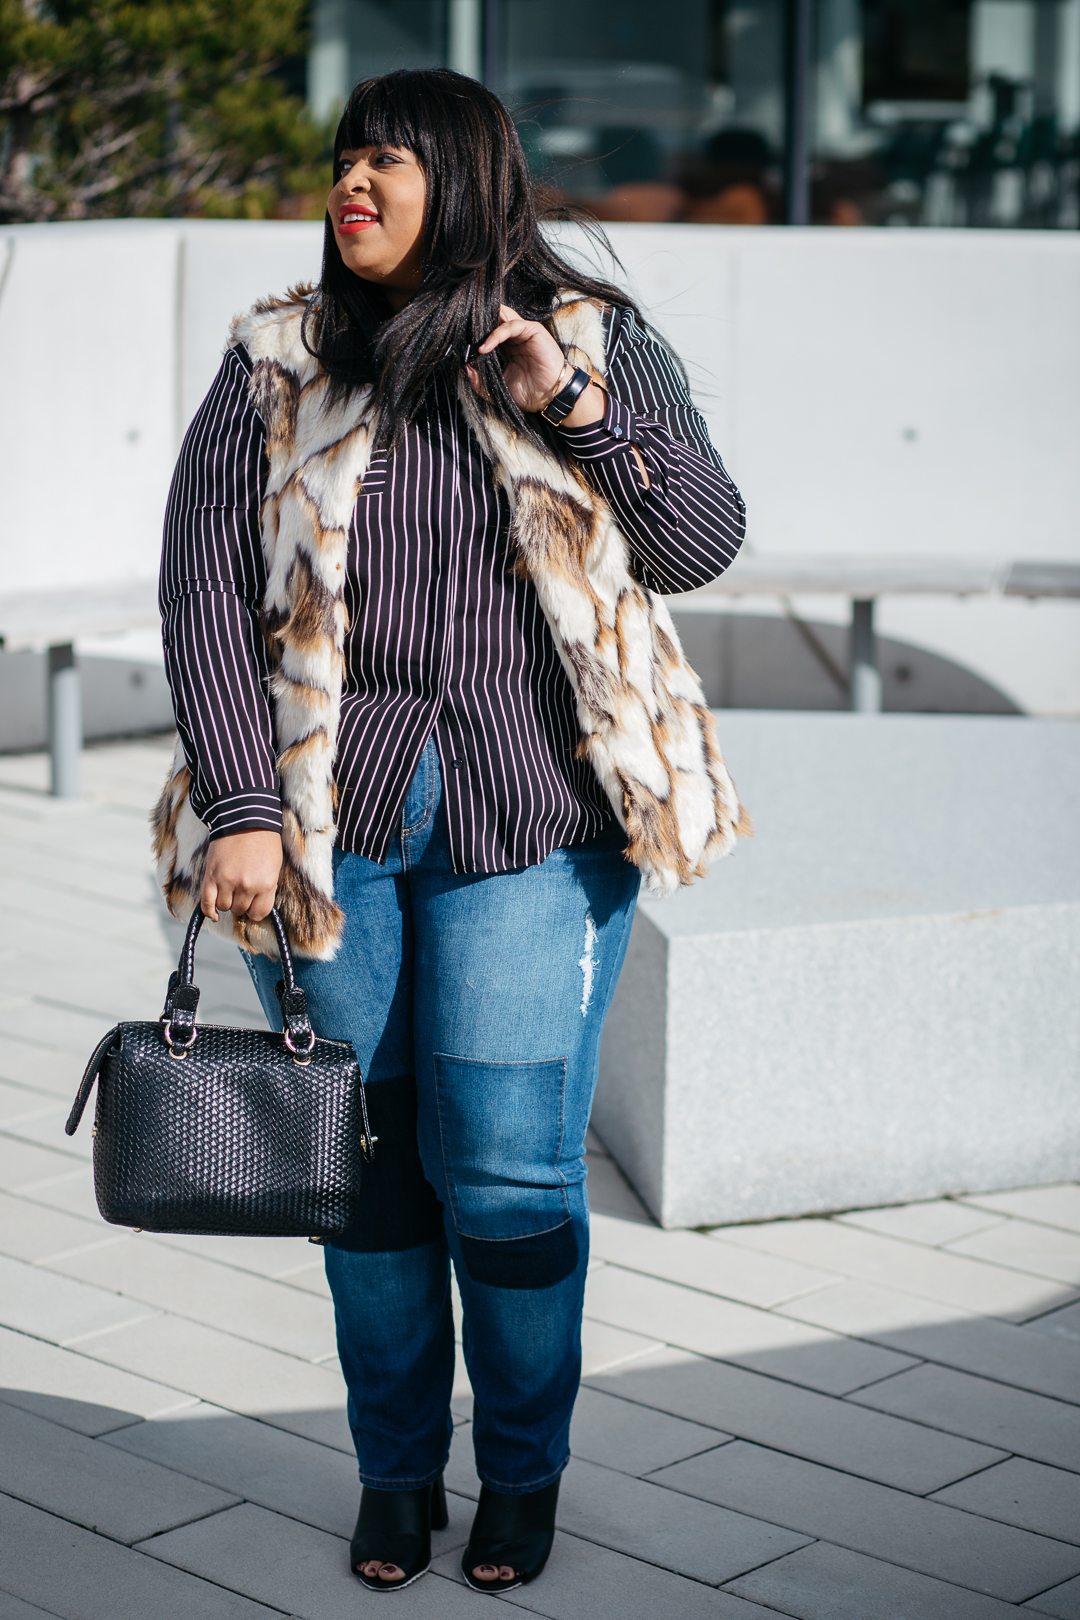 Plus Size Blogger Mixing Prints and Plus Size Fur Vest